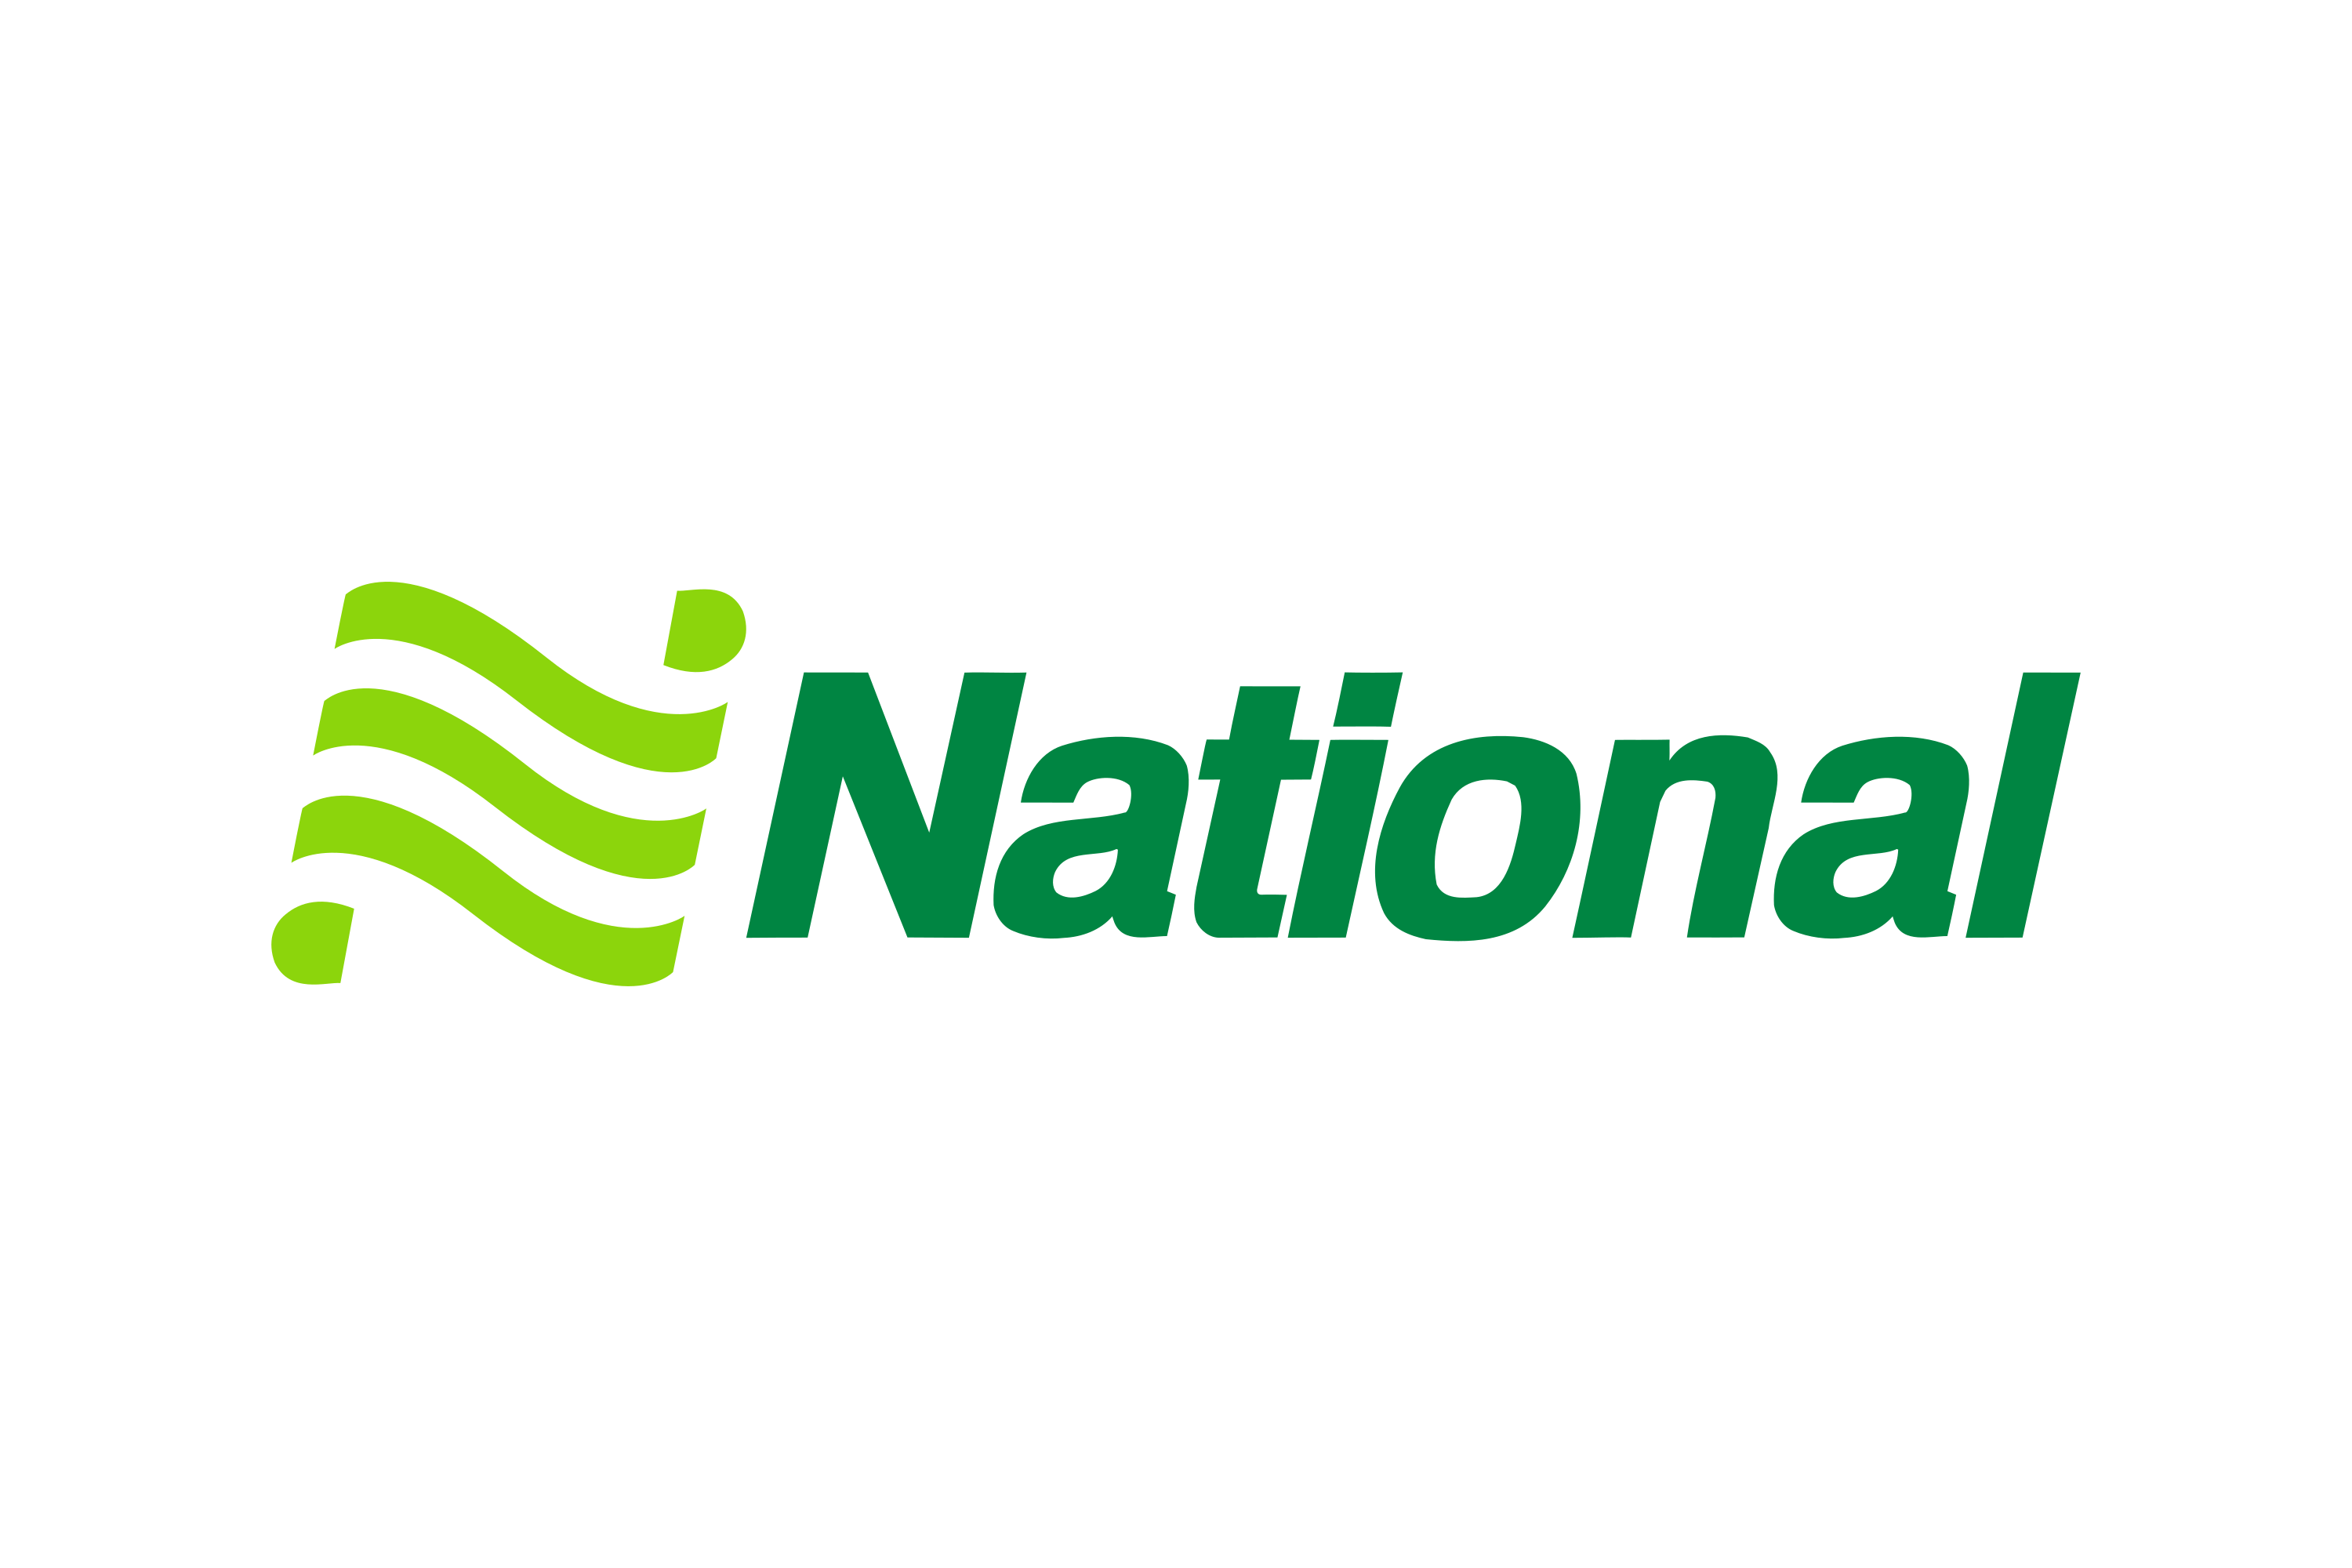 Download National Car Rental Logo in SVG Vector or PNG File Format